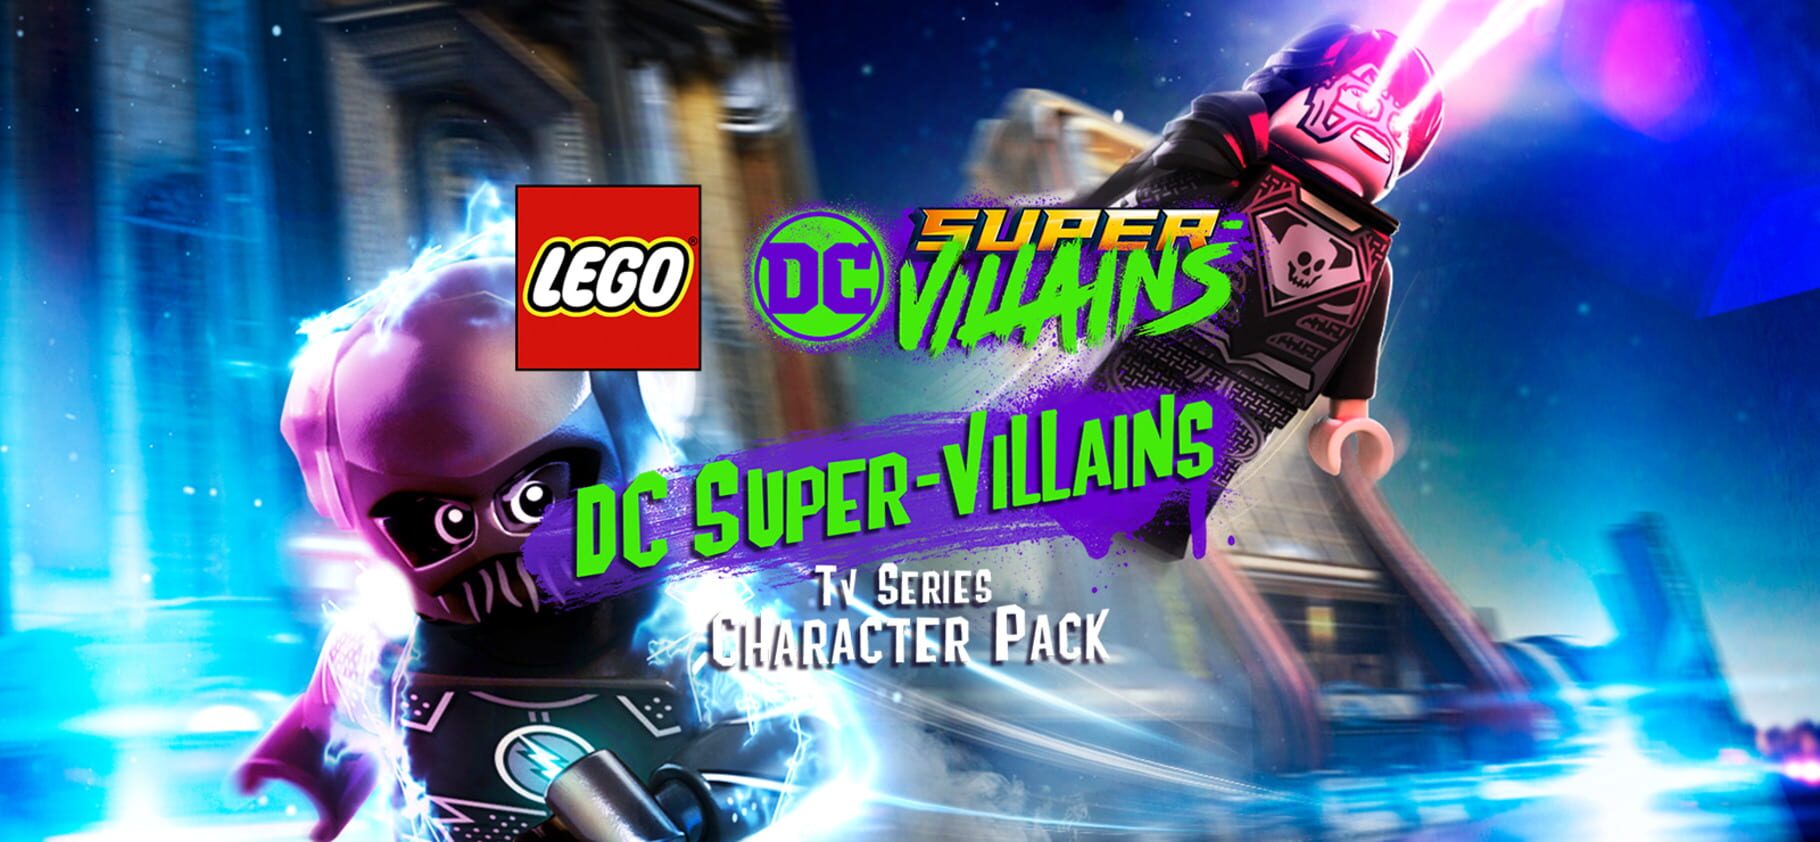 Arte - LEGO DC Super-Villains: DC TV Series Super-Villains Character Pack